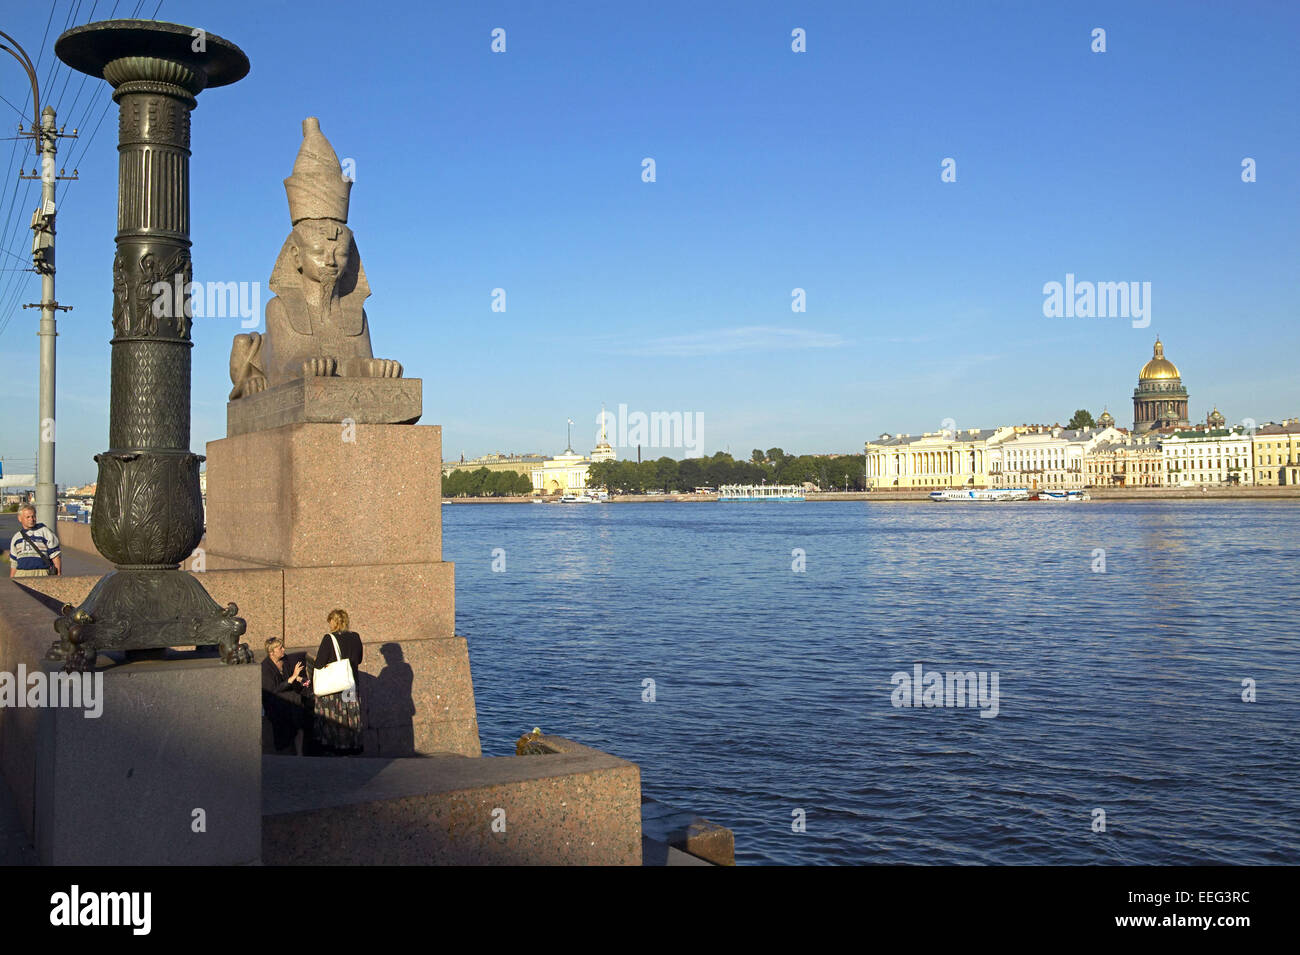 Russland Sankt Petersburg Newa Sphinx Saeule Ufer Menschen Isaakskathedrale Sehenswuerdigkeit Aussen Geographie Asien Gus Stockfoto